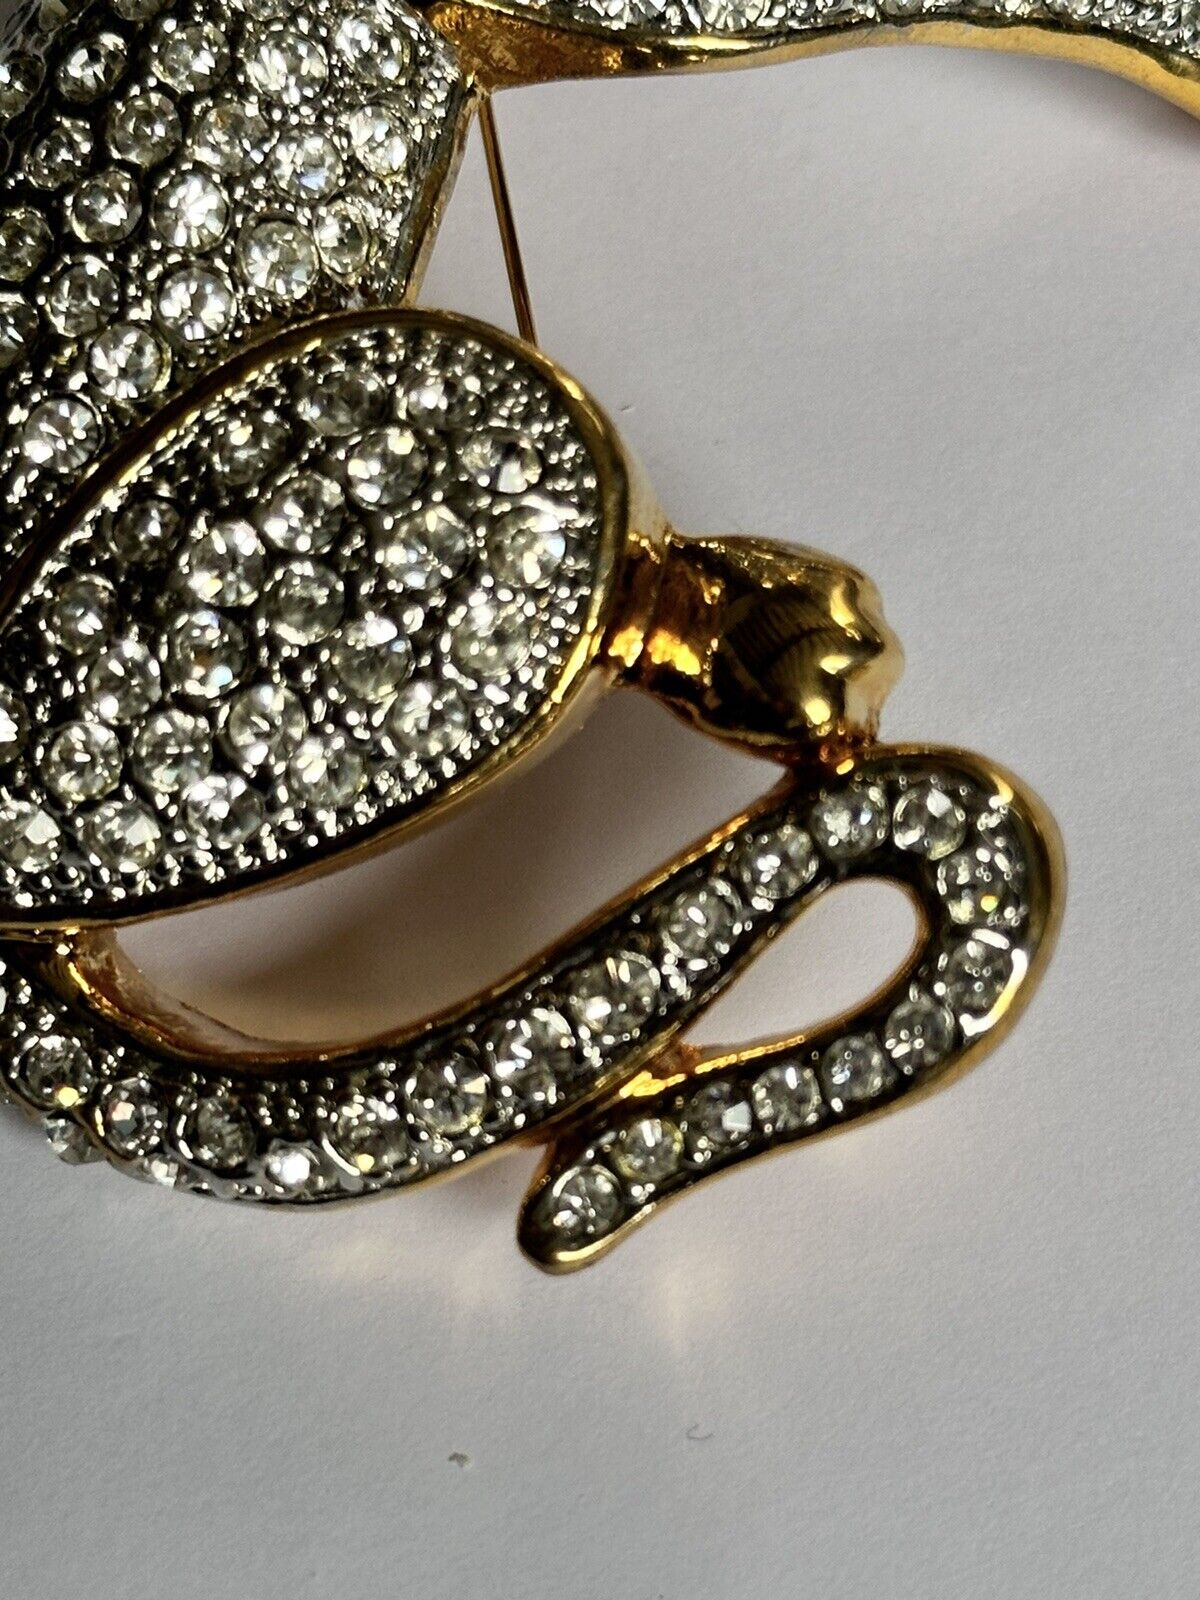 Vintage Runway Gold Tone Large Diamanté Cat Brooch